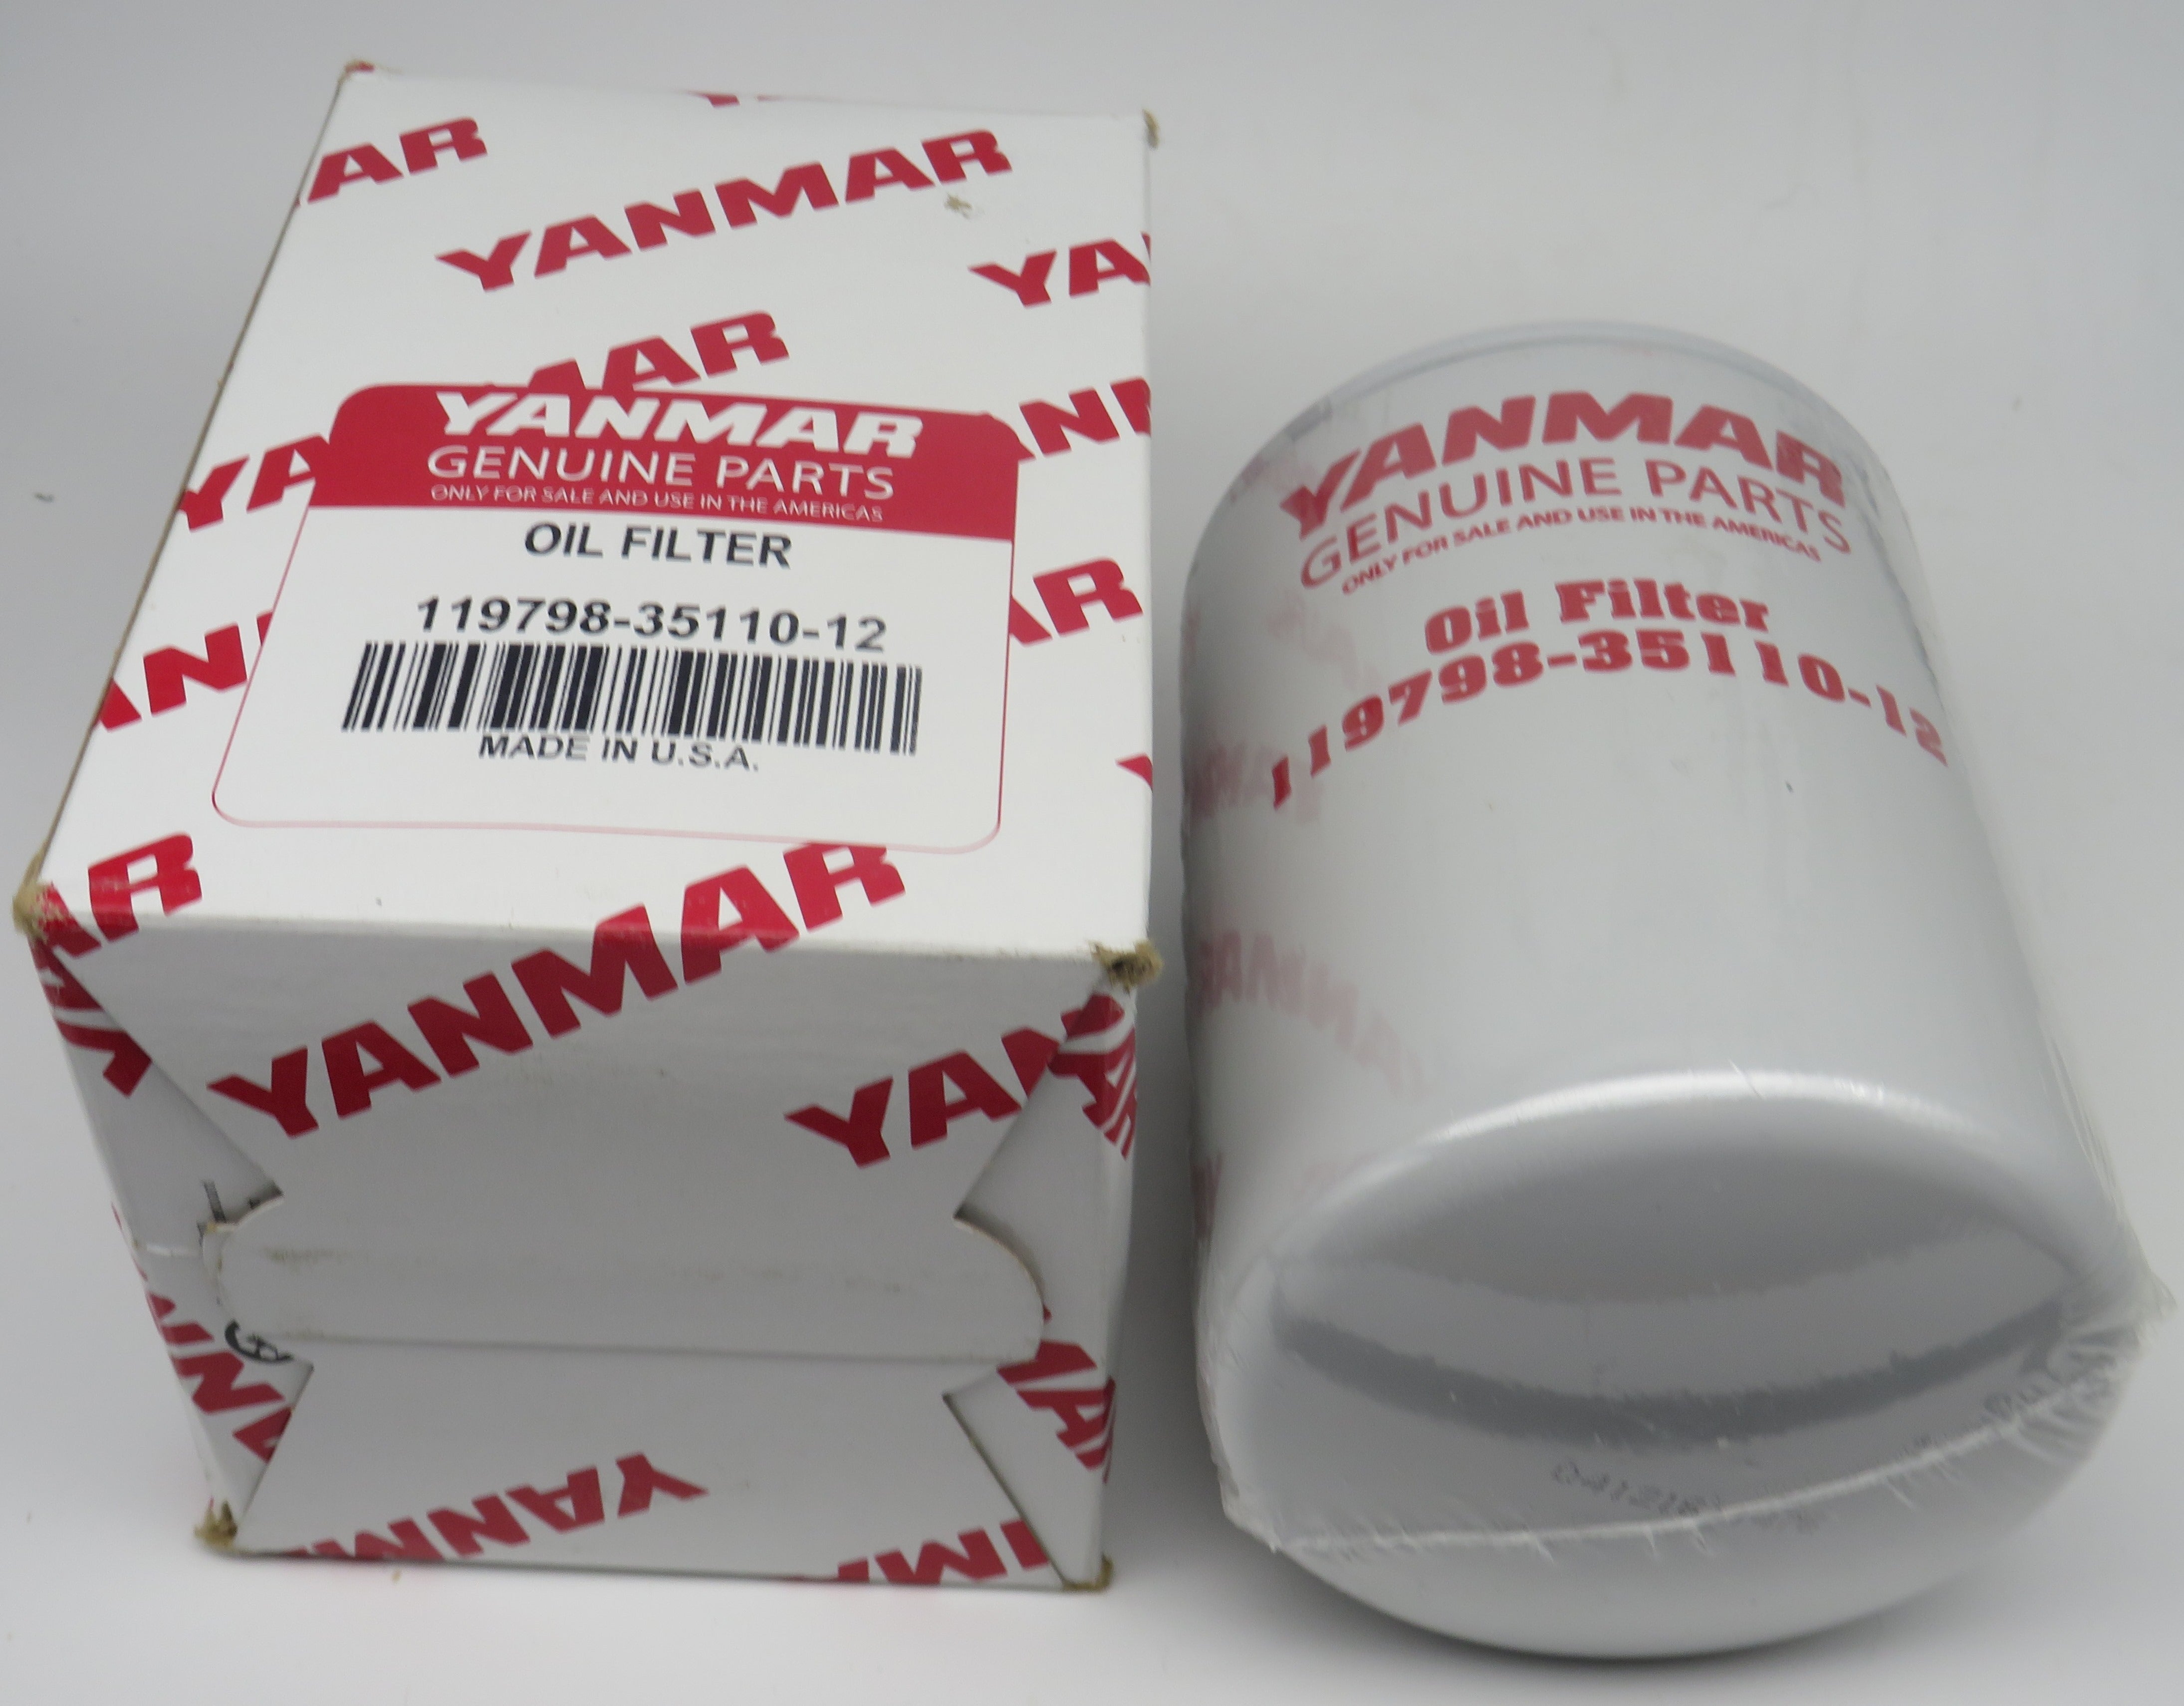 Yanmar Oil Filter 124411-35170 replaces 119798-35110-12